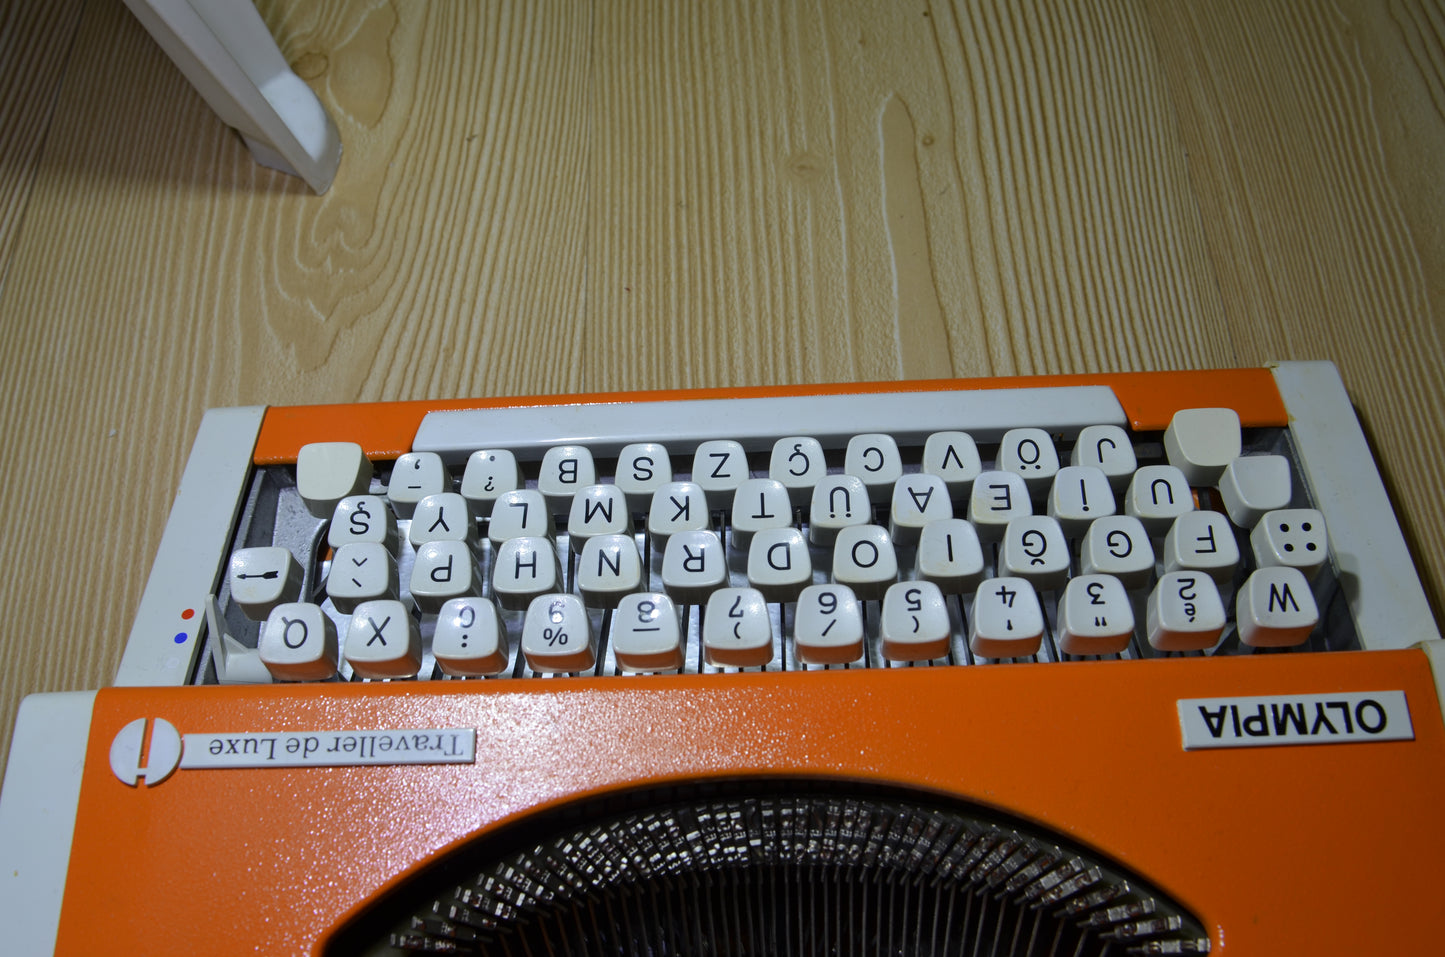 Olympia Orange Color Typewriter,Orginal Bag Avaible Orange Color Typewriter